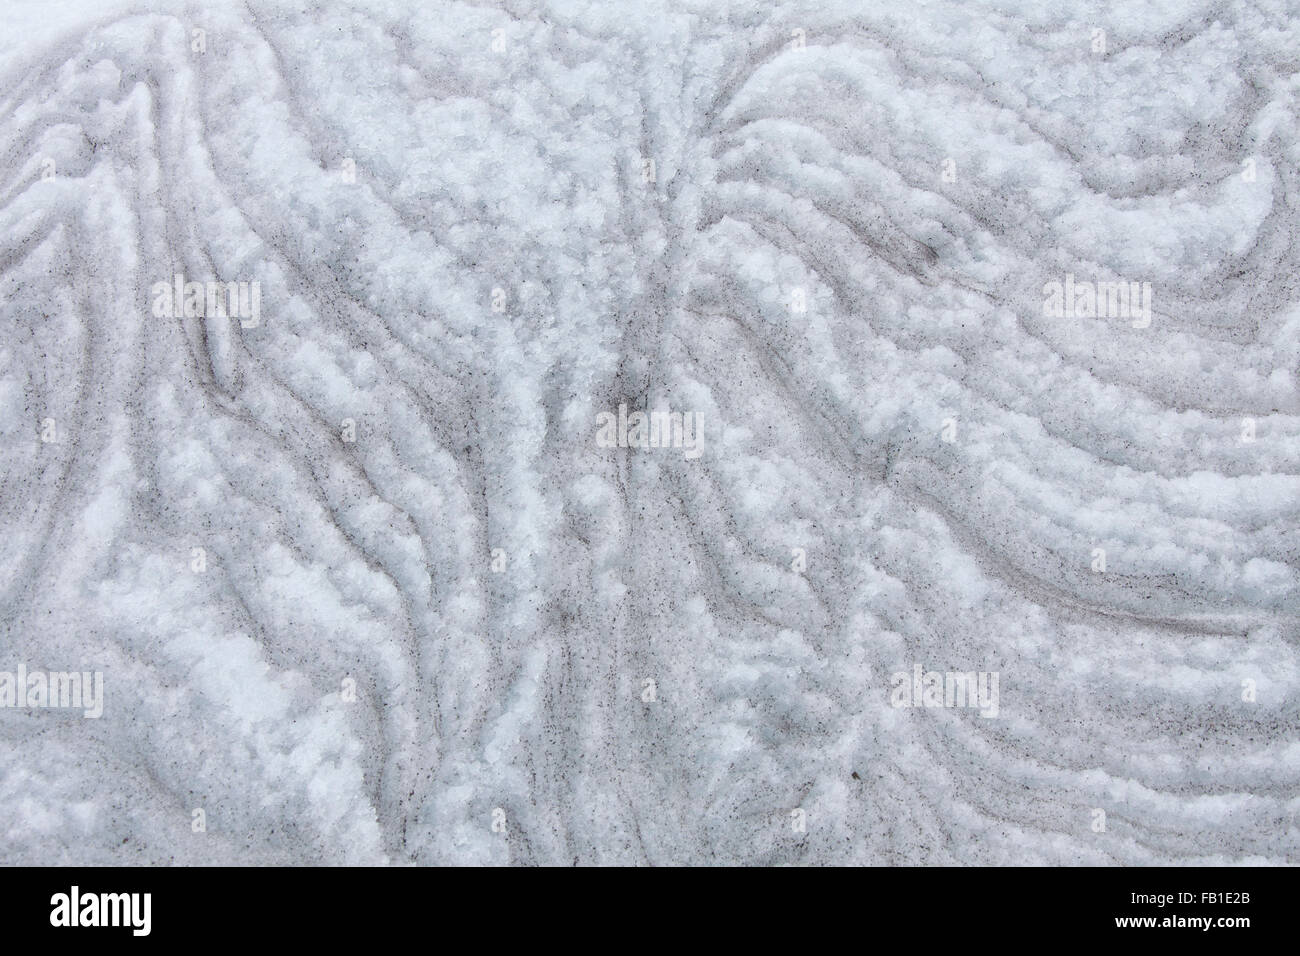 Dettaglio mostrante pranzo formazione di neve a strati con sporcizia / massa nella lastra di ghiaccio sul ghiacciaio Foto Stock